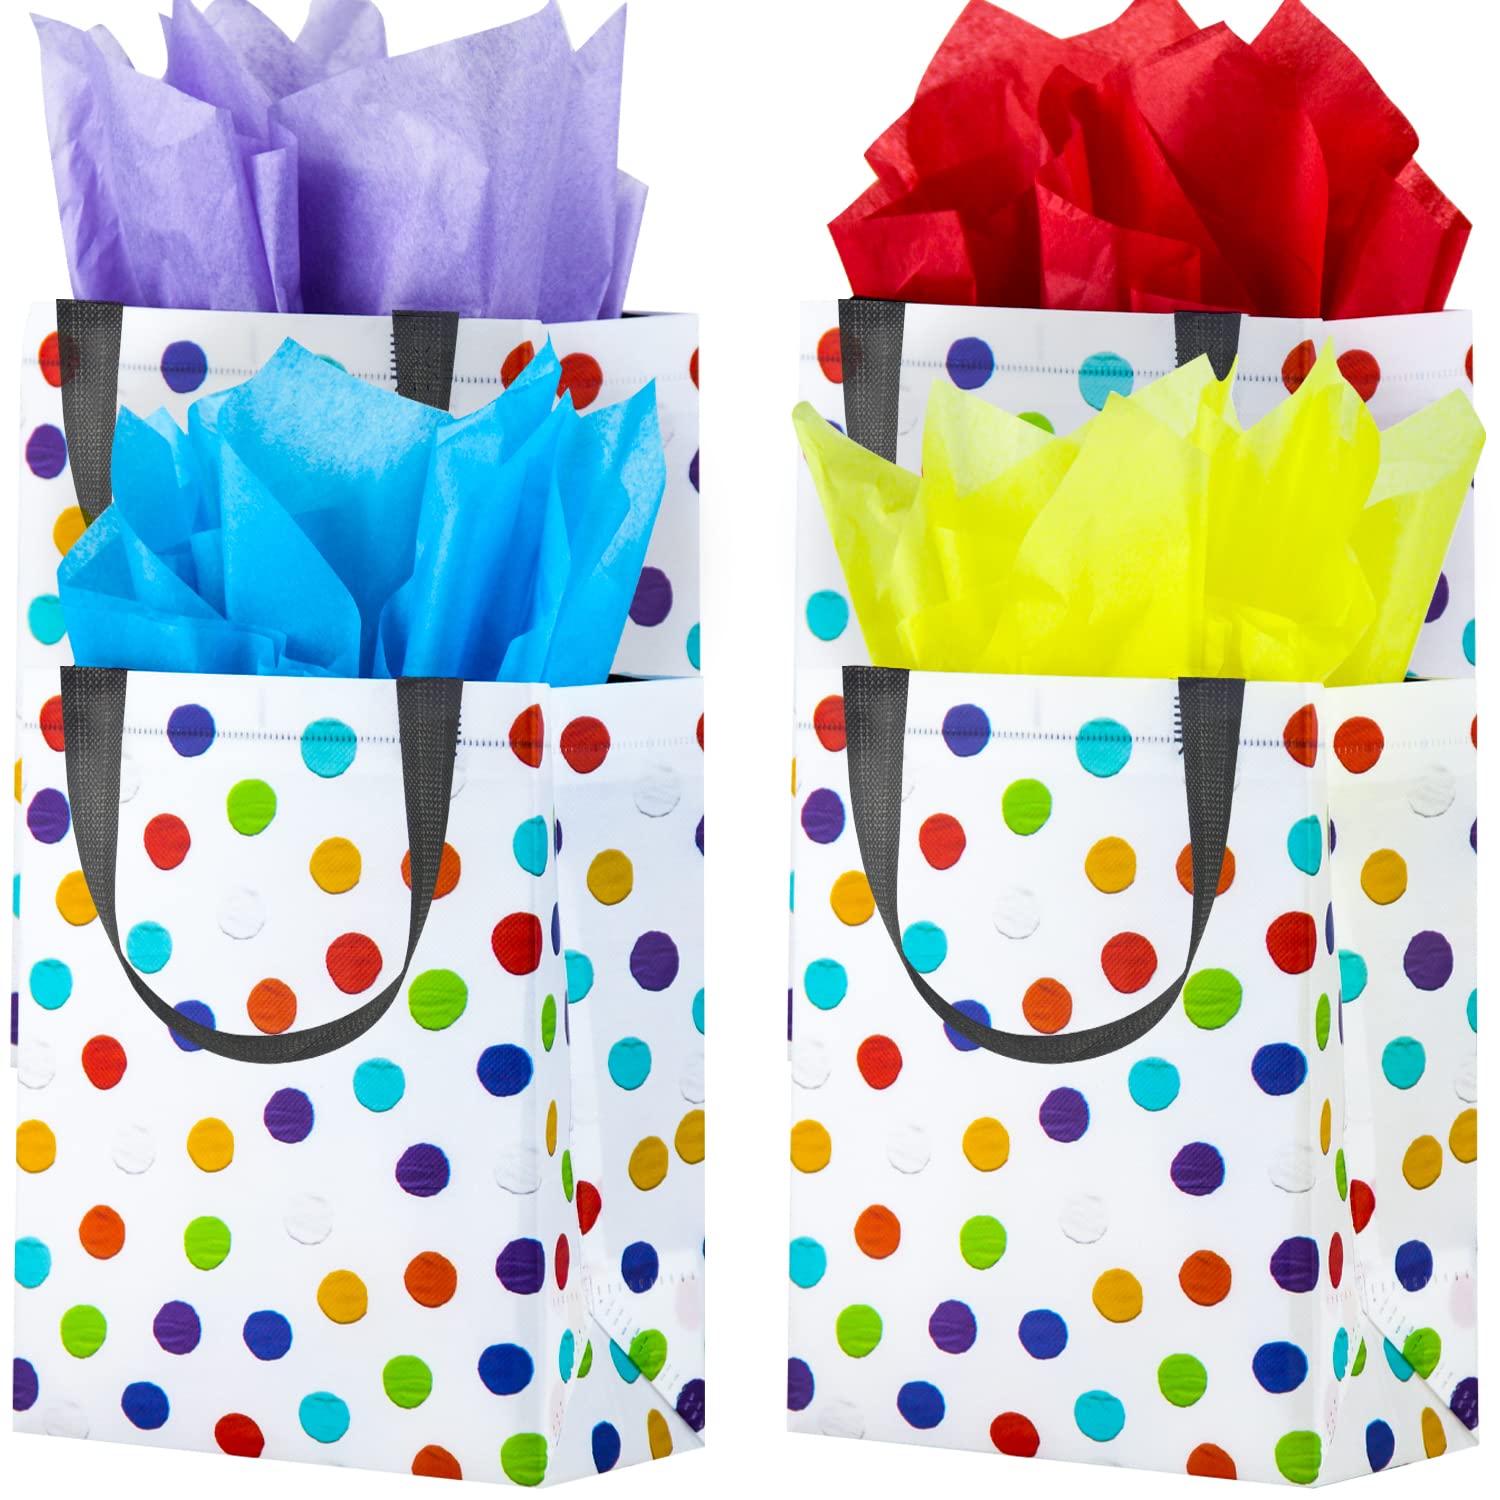 BLEWINDZ Wiederverwendbare Geschenktüten mit 16 Taschentüchern – mittelgroß, Regenbogen-Punkt-Partytüten für Geburtstag, Babyparty, Shopping, Lehrer, Wertschätzung, Partyzubehör (25,4 x 19,3 x 10,9